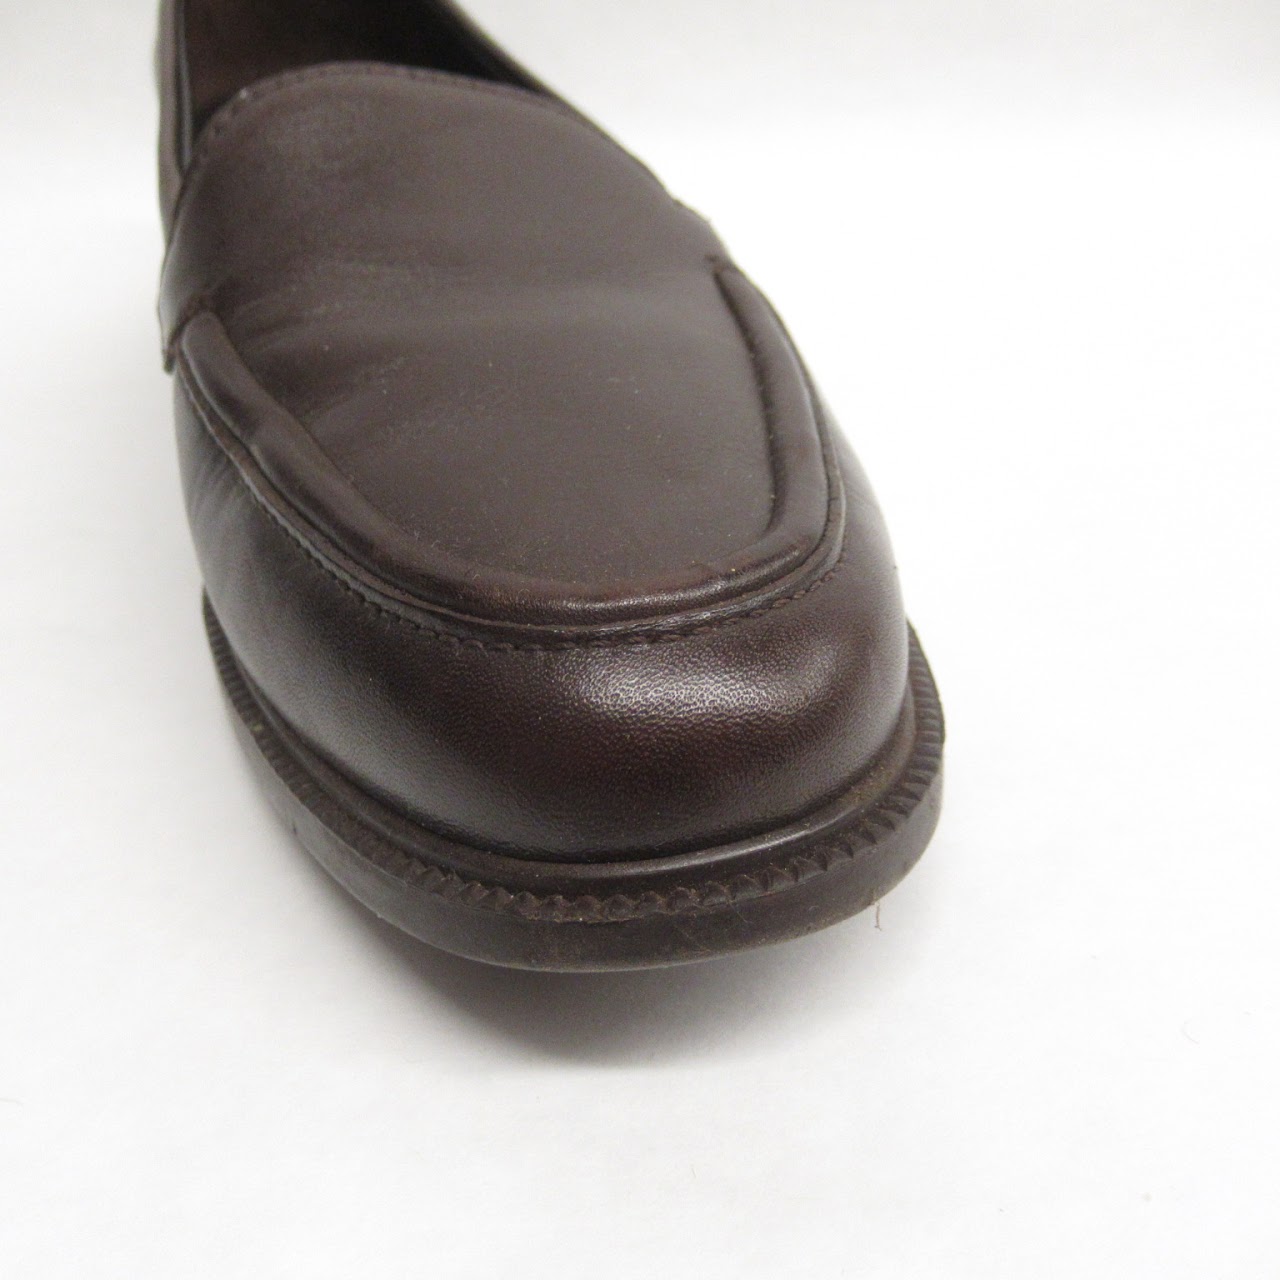 Salvatore Ferragamo Brown Leather Loafers